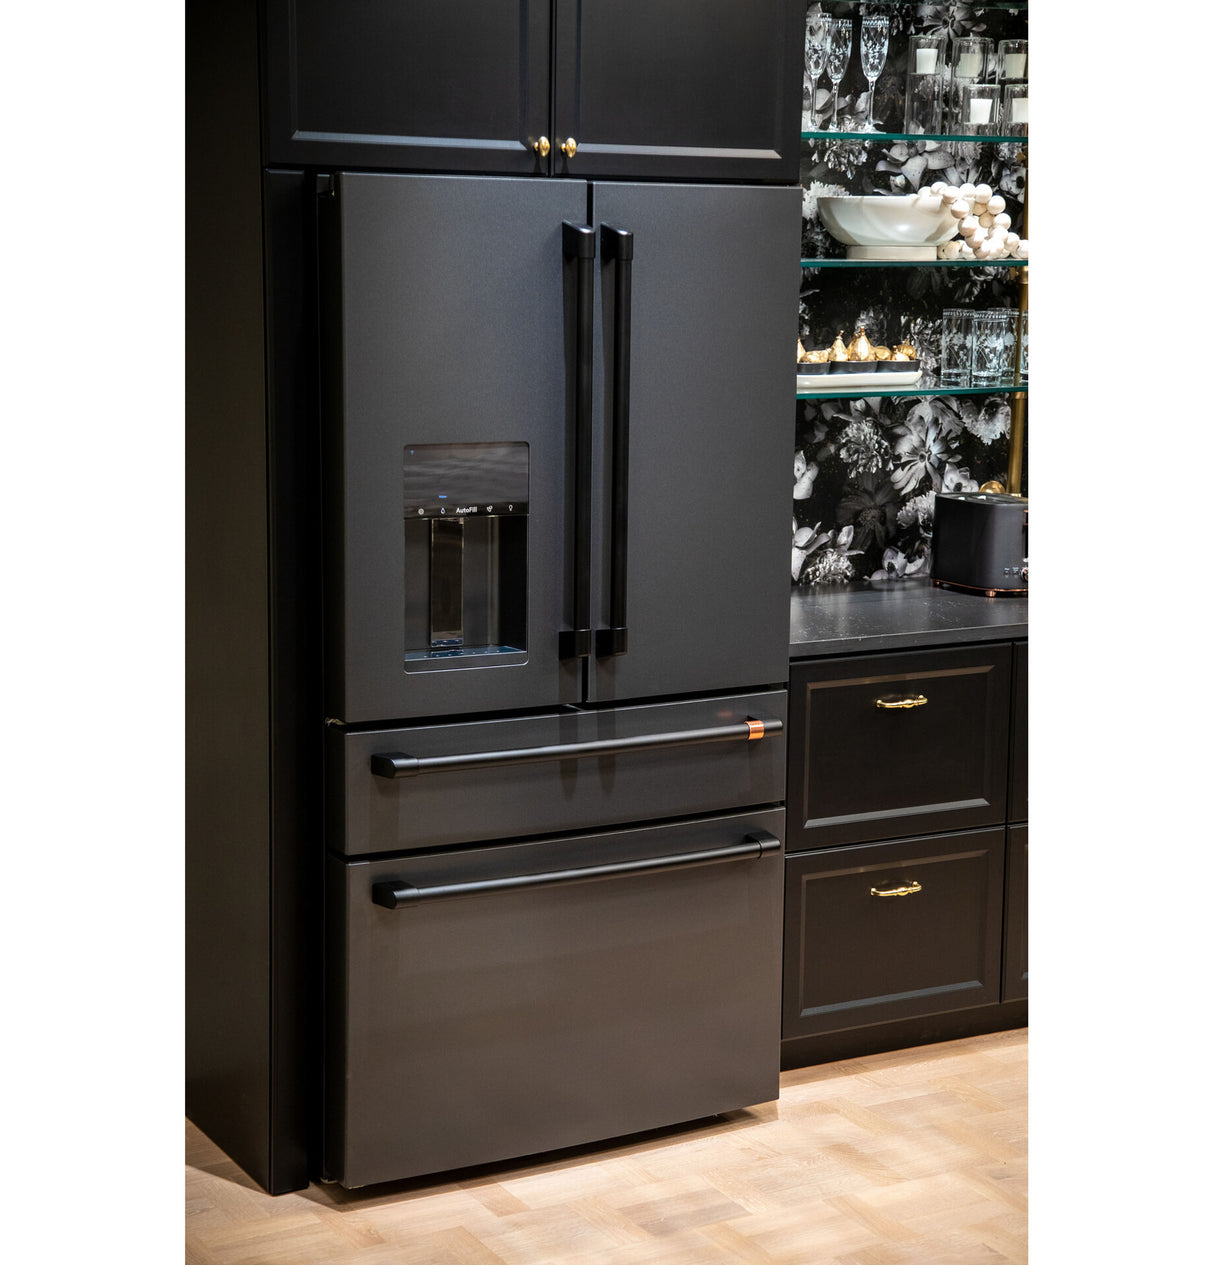 Caf(eback)(TM) ENERGY STAR(R) 27.8 Cu. Ft. Smart 4-Door French-Door Refrigerator - (CVE28DP3ND1)